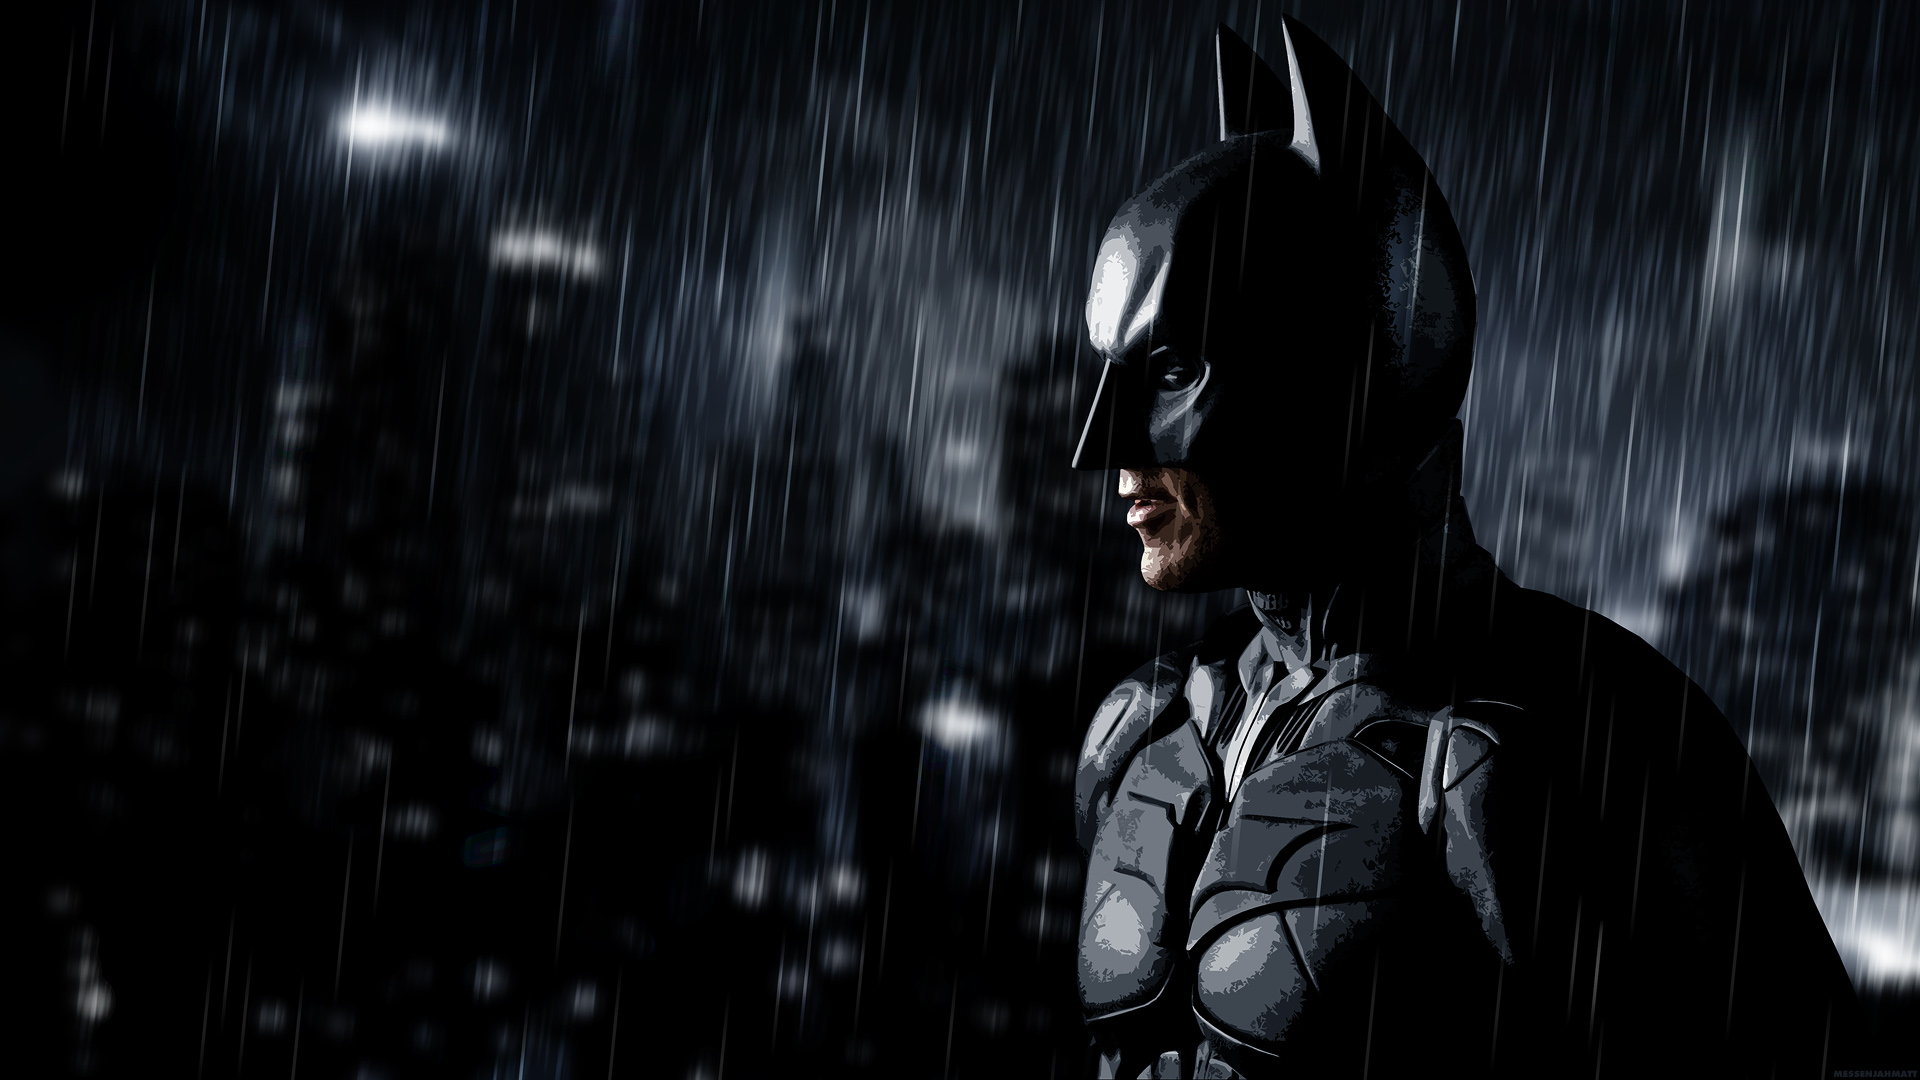 Batman Arkham City HD Wallpaper For Desktop And iPad